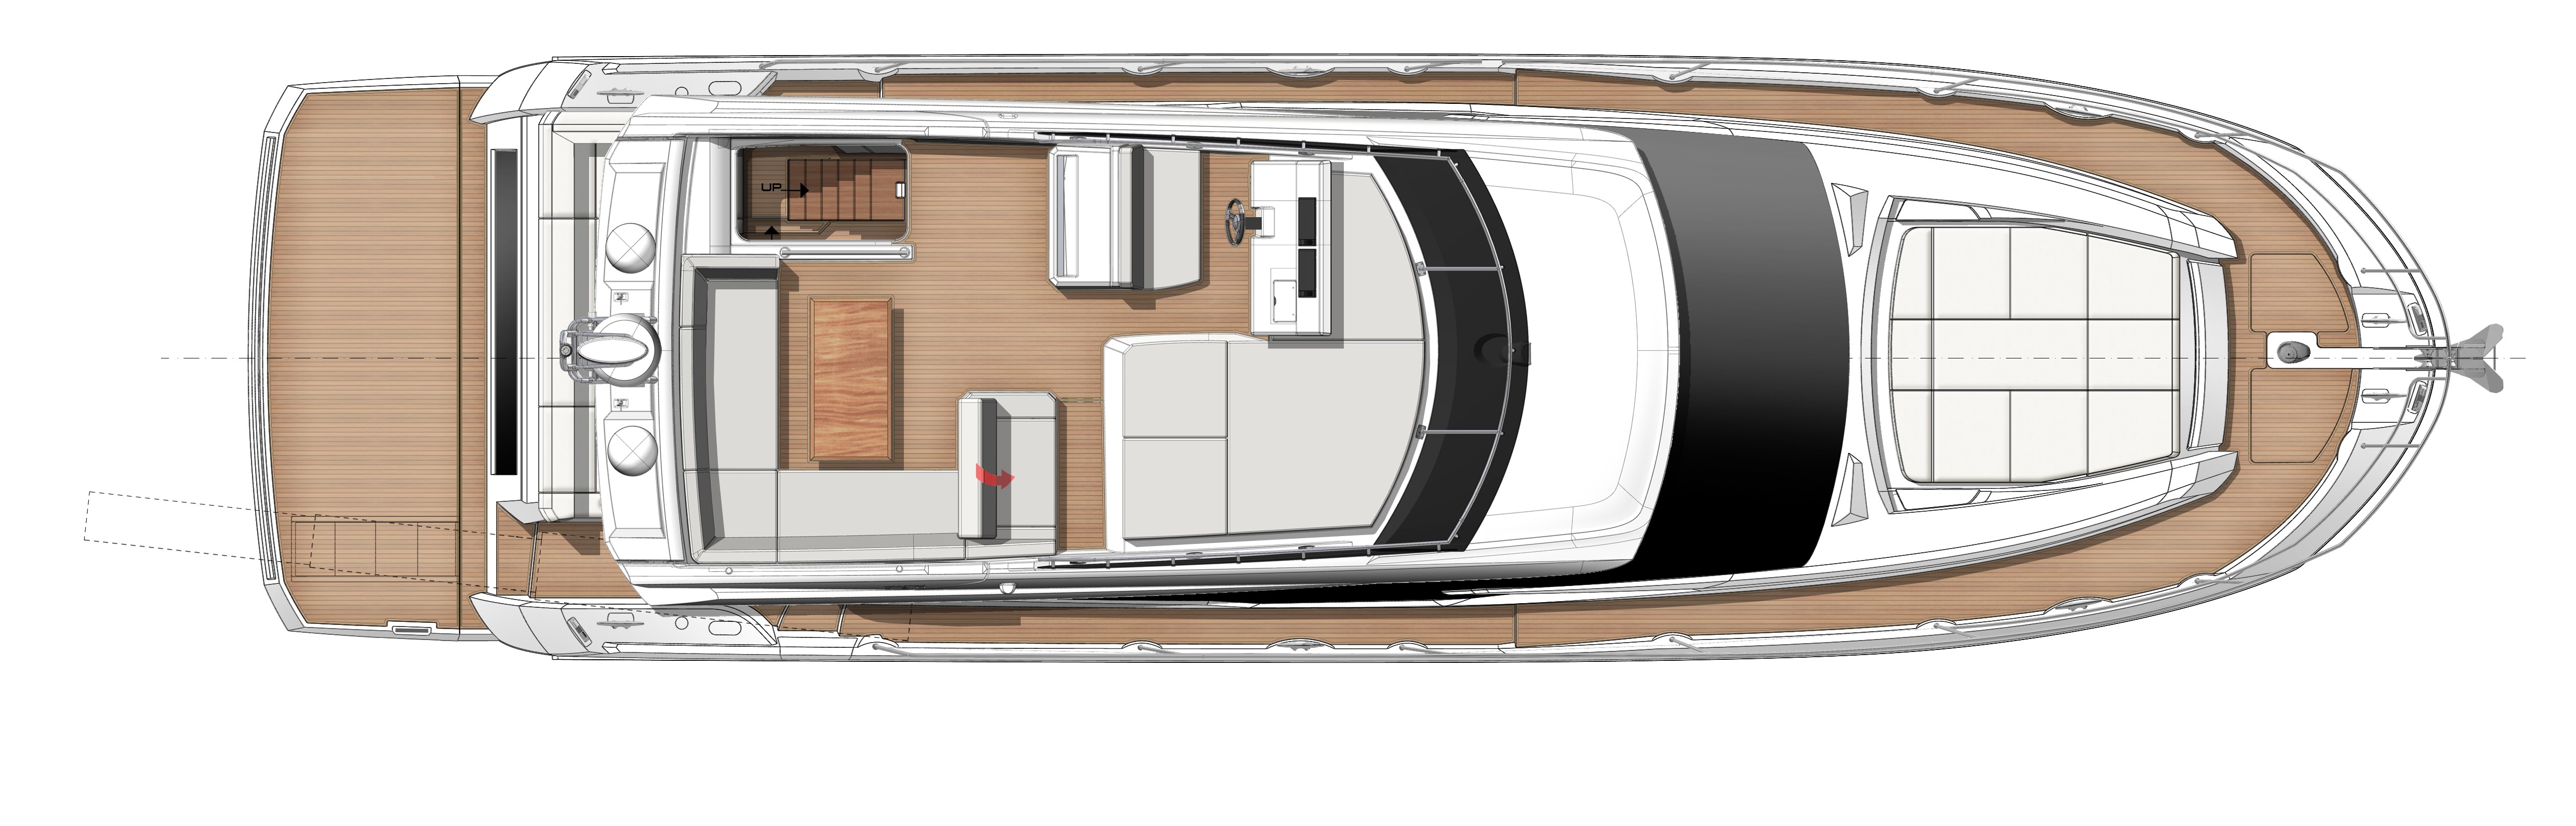 Prestige 520 main deck exterior